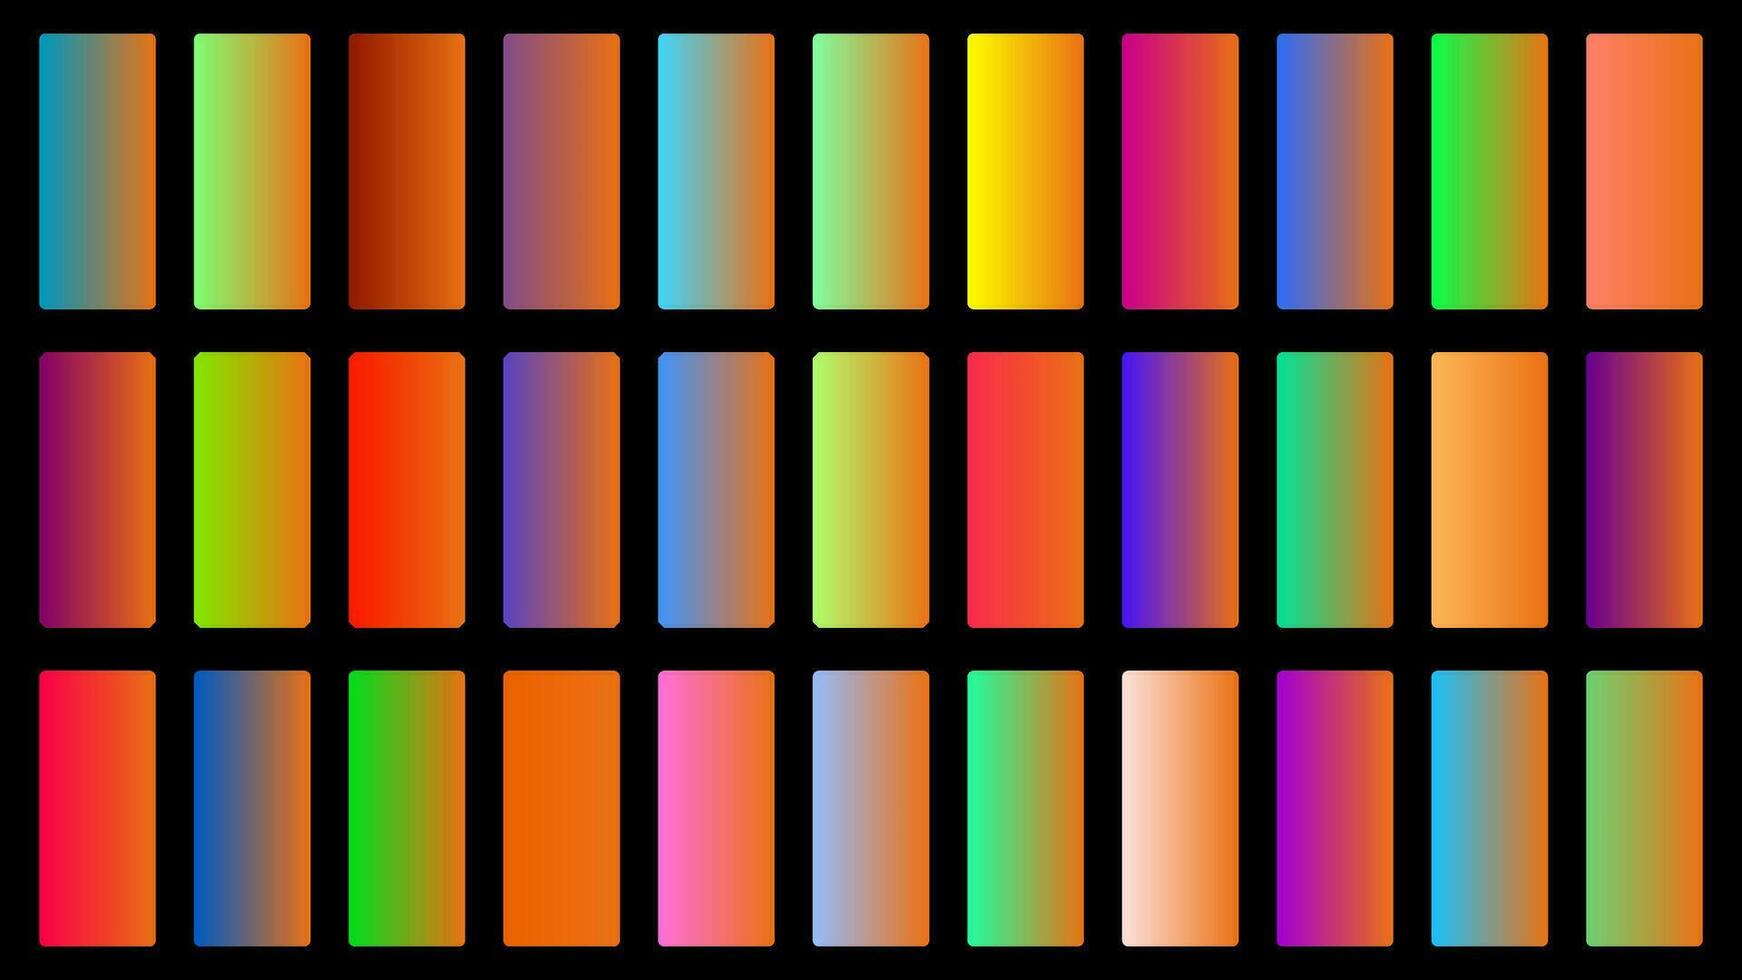 coloré carotte Couleur ombre linéaire pente palette échantillons la toile trousse arrondi rectangles modèle ensemble vecteur